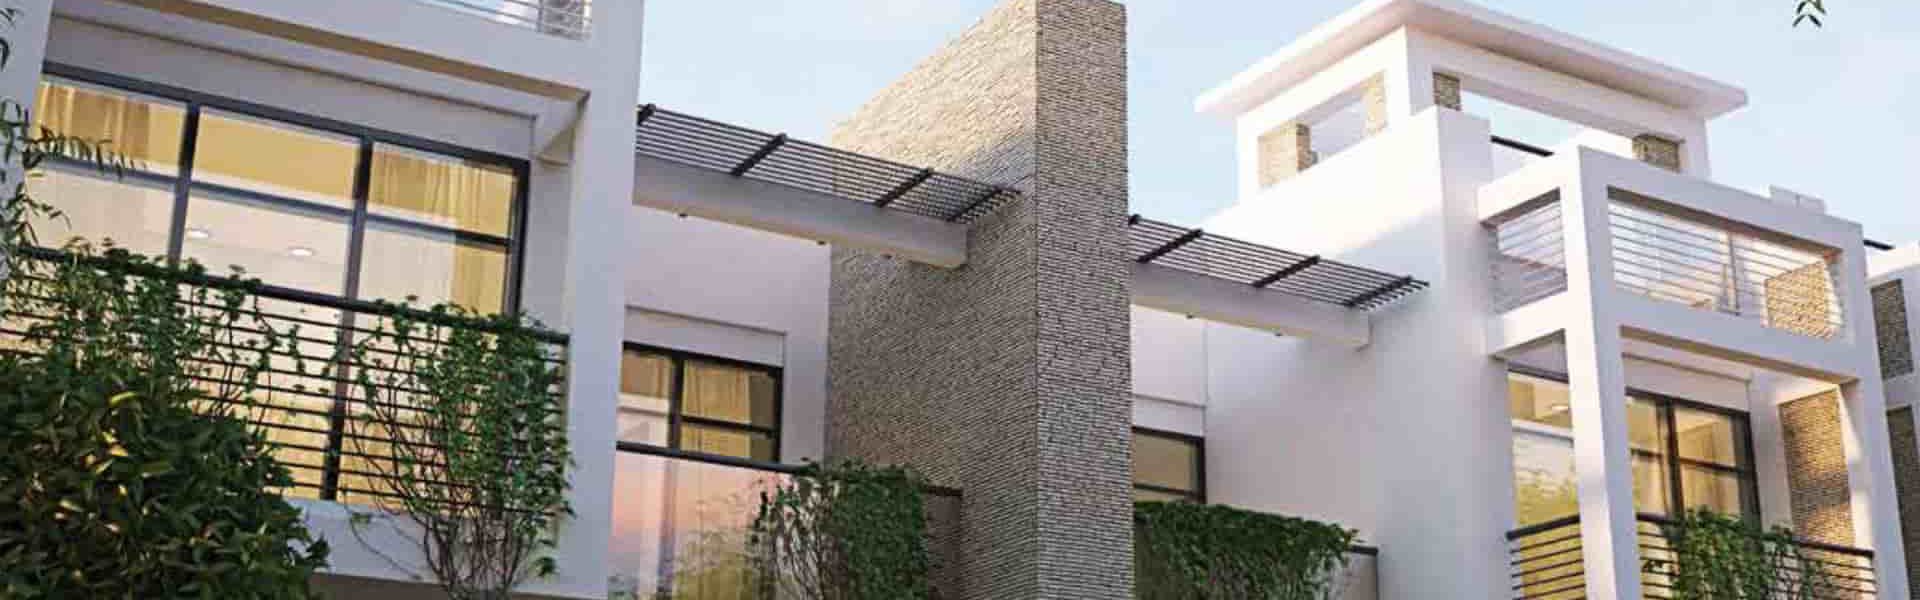 خرید خانه در دبی از ریتزکارلتون رزیدنس